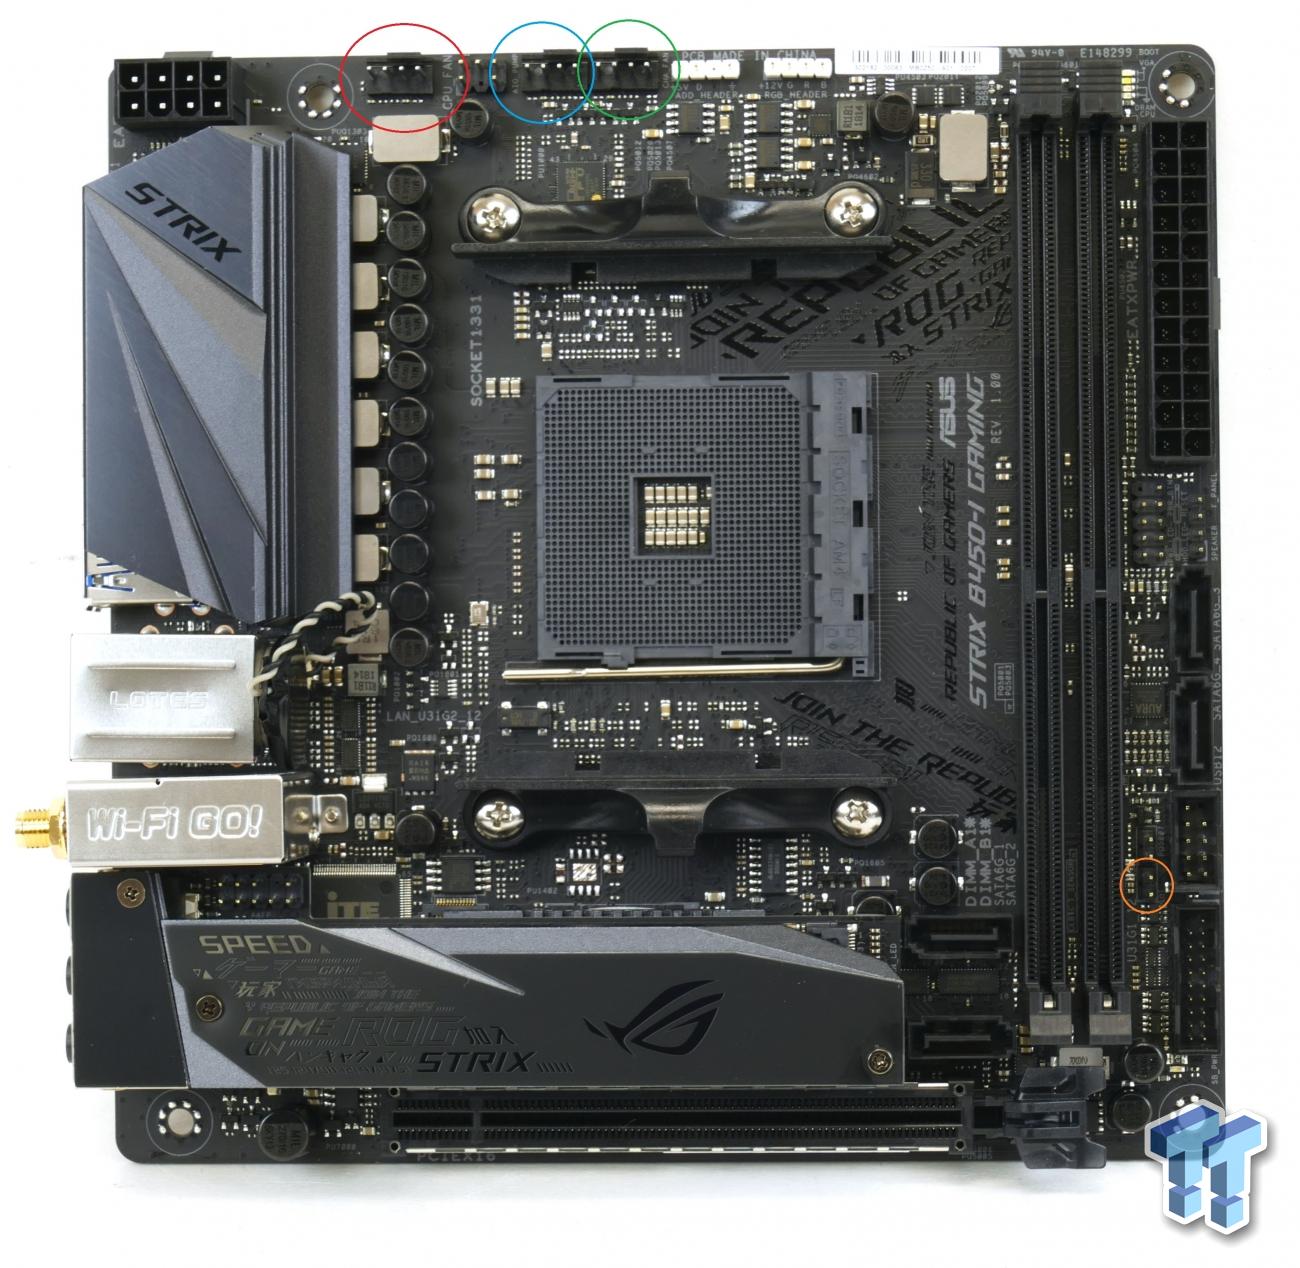 ASUS ROG Strix B450-I Gaming (AMD B450) Motherboard Review